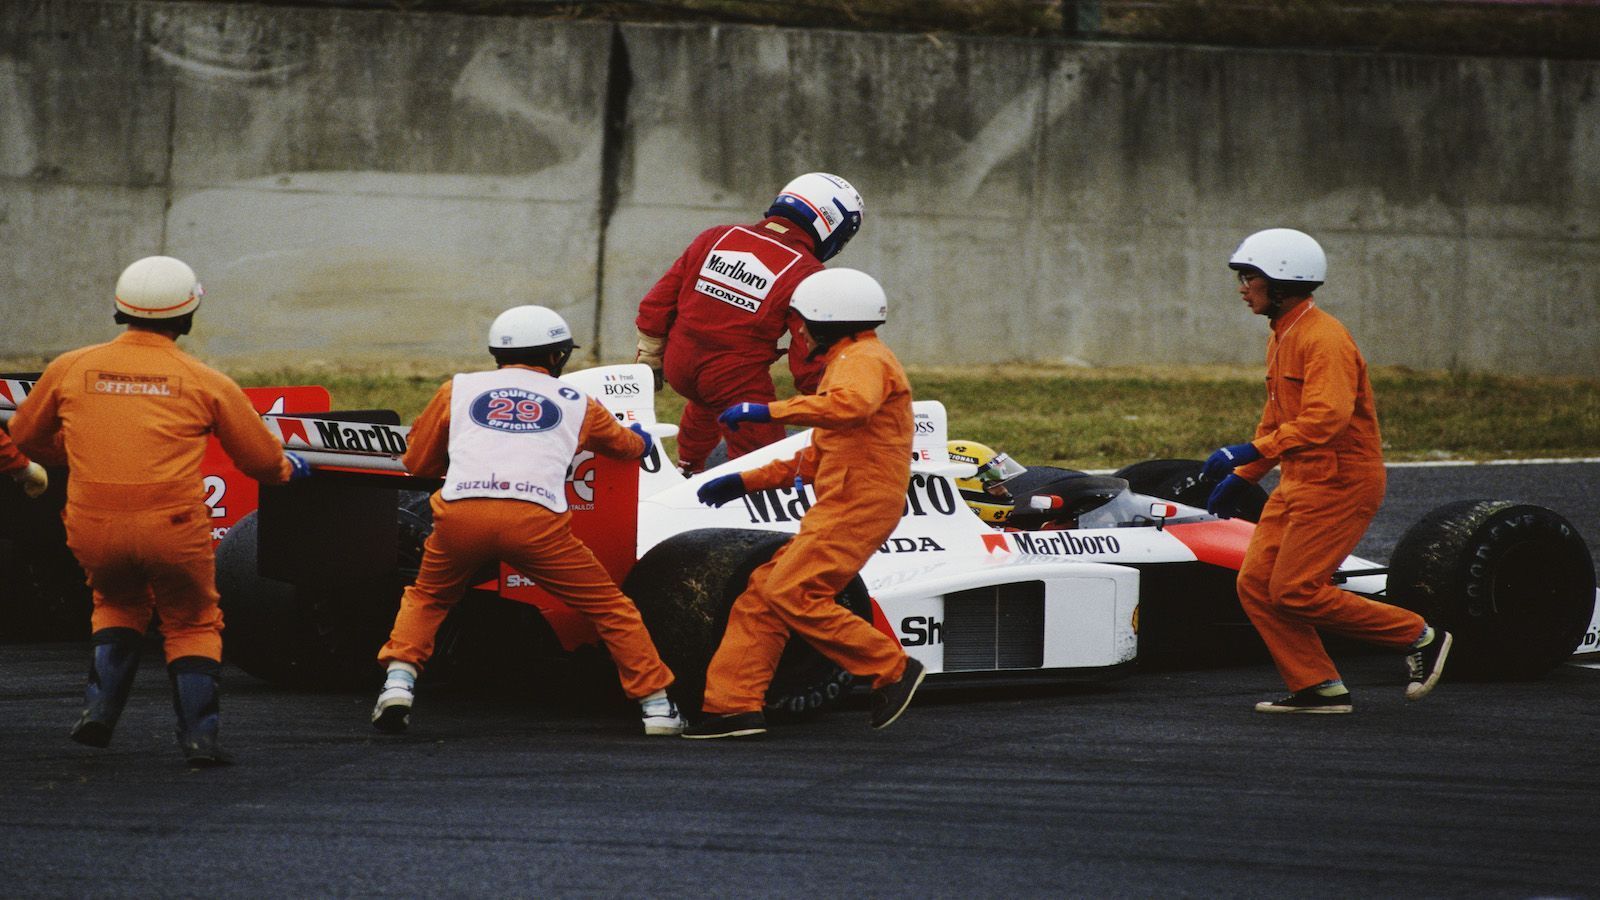 
                <strong>1989, Suzuka: Unfall zwischen Ayrton Senna und Alain Prost</strong><br>
                Ein Jahr zuvor fahren Senna und prost noch beide für McLaren. Beim vorletzten Saisonrennen crashen die Teamkollegen. "Professor" Prost scheidet aus, Senna fährt als Erster über die Ziellinie. Allerdings wird Senna die Schuld am Unfall gegeben - er wird disqualifiziert. Prost ist damit vorzeitig Weltmeister. Pikant: FISA-Präsident Jean-Marie Balestre setzt sich vehement für Sennas Disqualifikation ein - der Mann ist wie Prost Franzose...
              